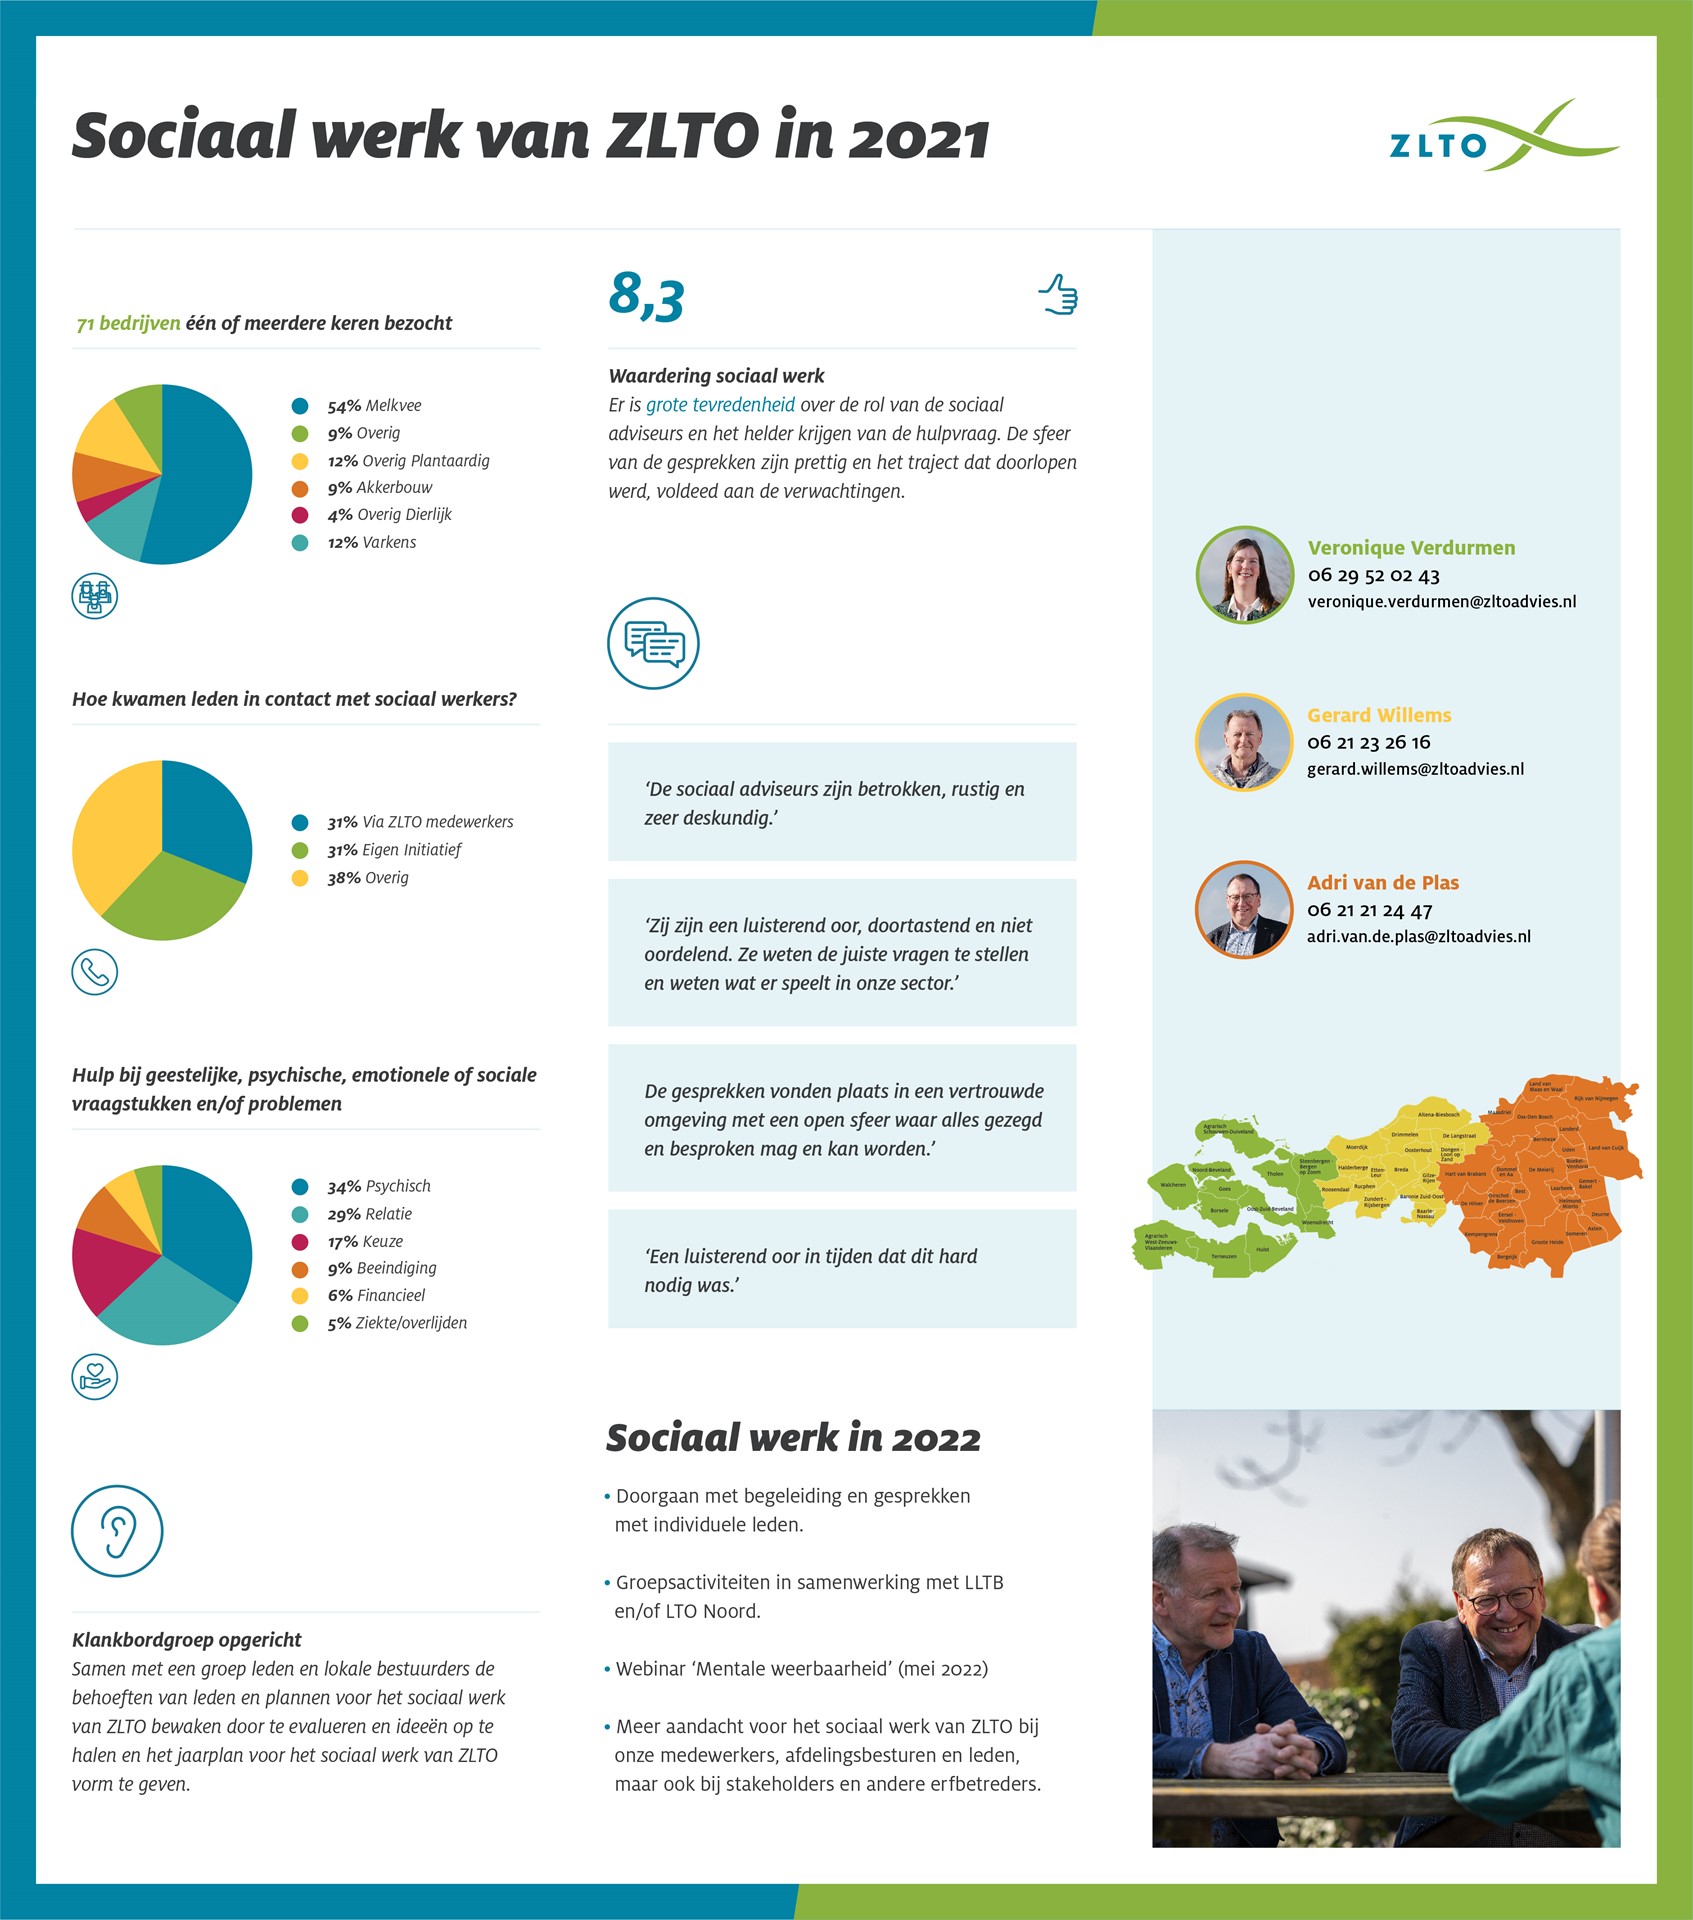 Sociaal werk van ZLTO in 2021